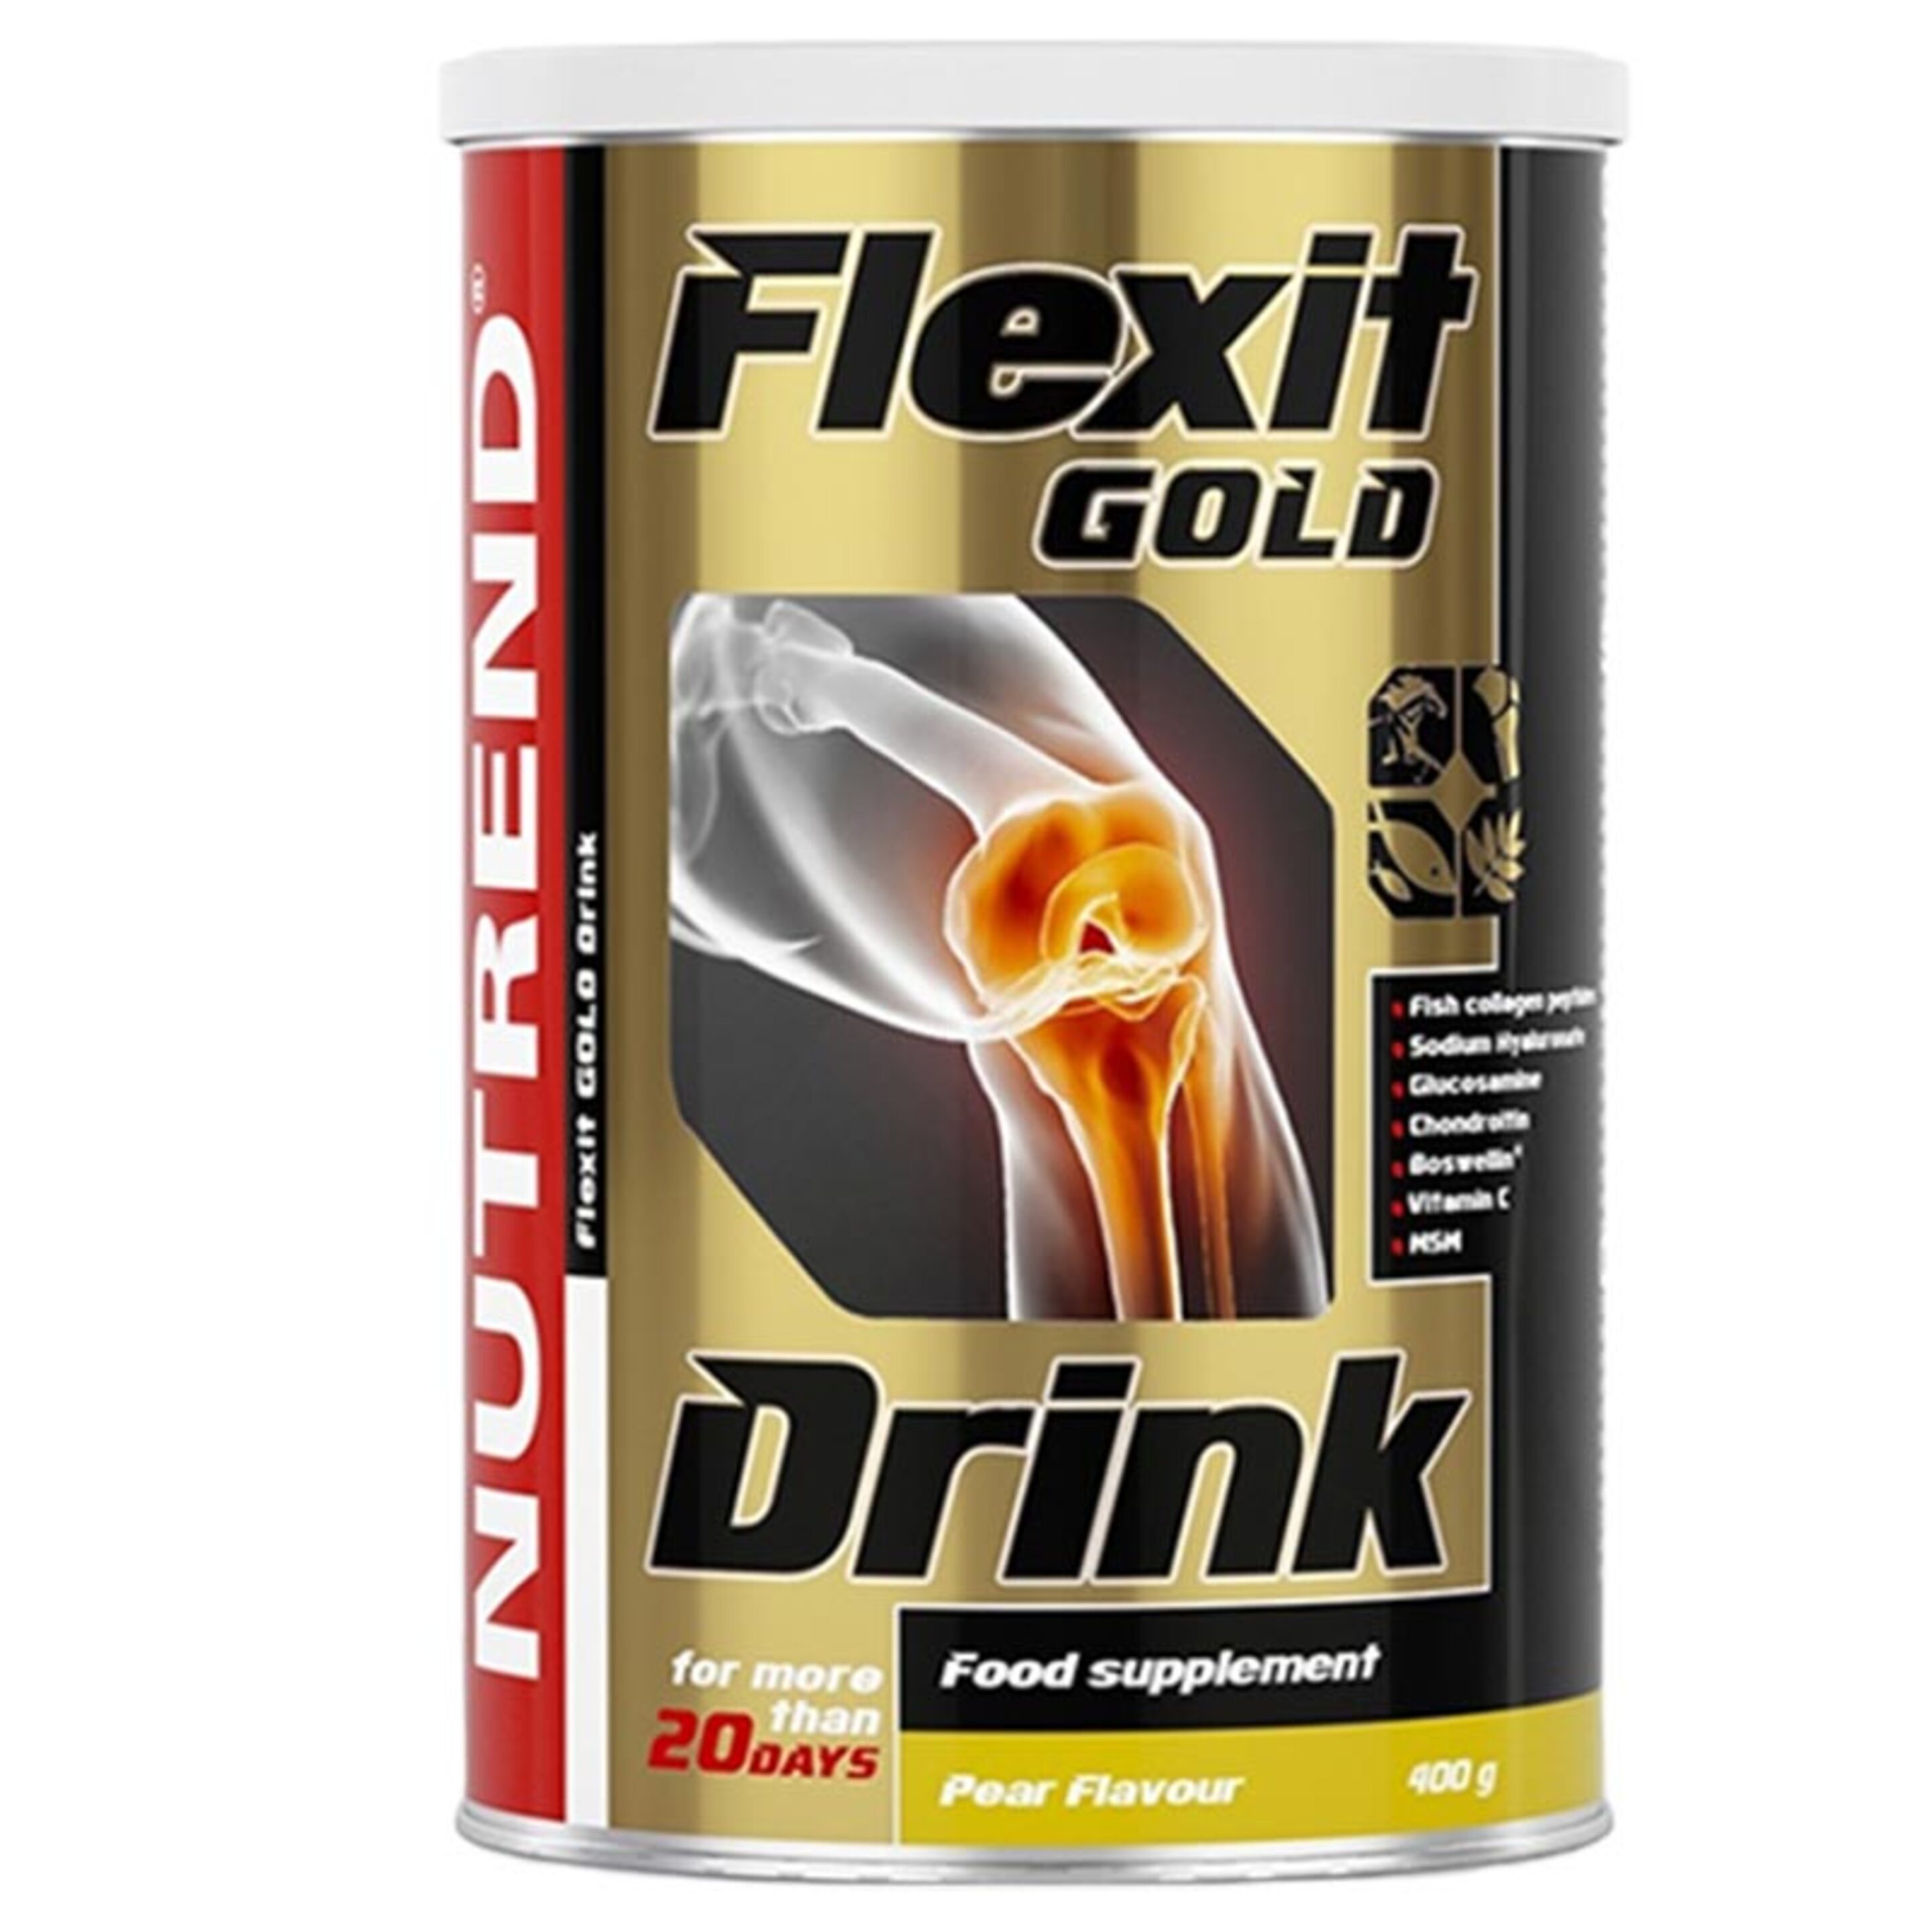 Flexit Gold Drink - 400g - Nutrend  MKP